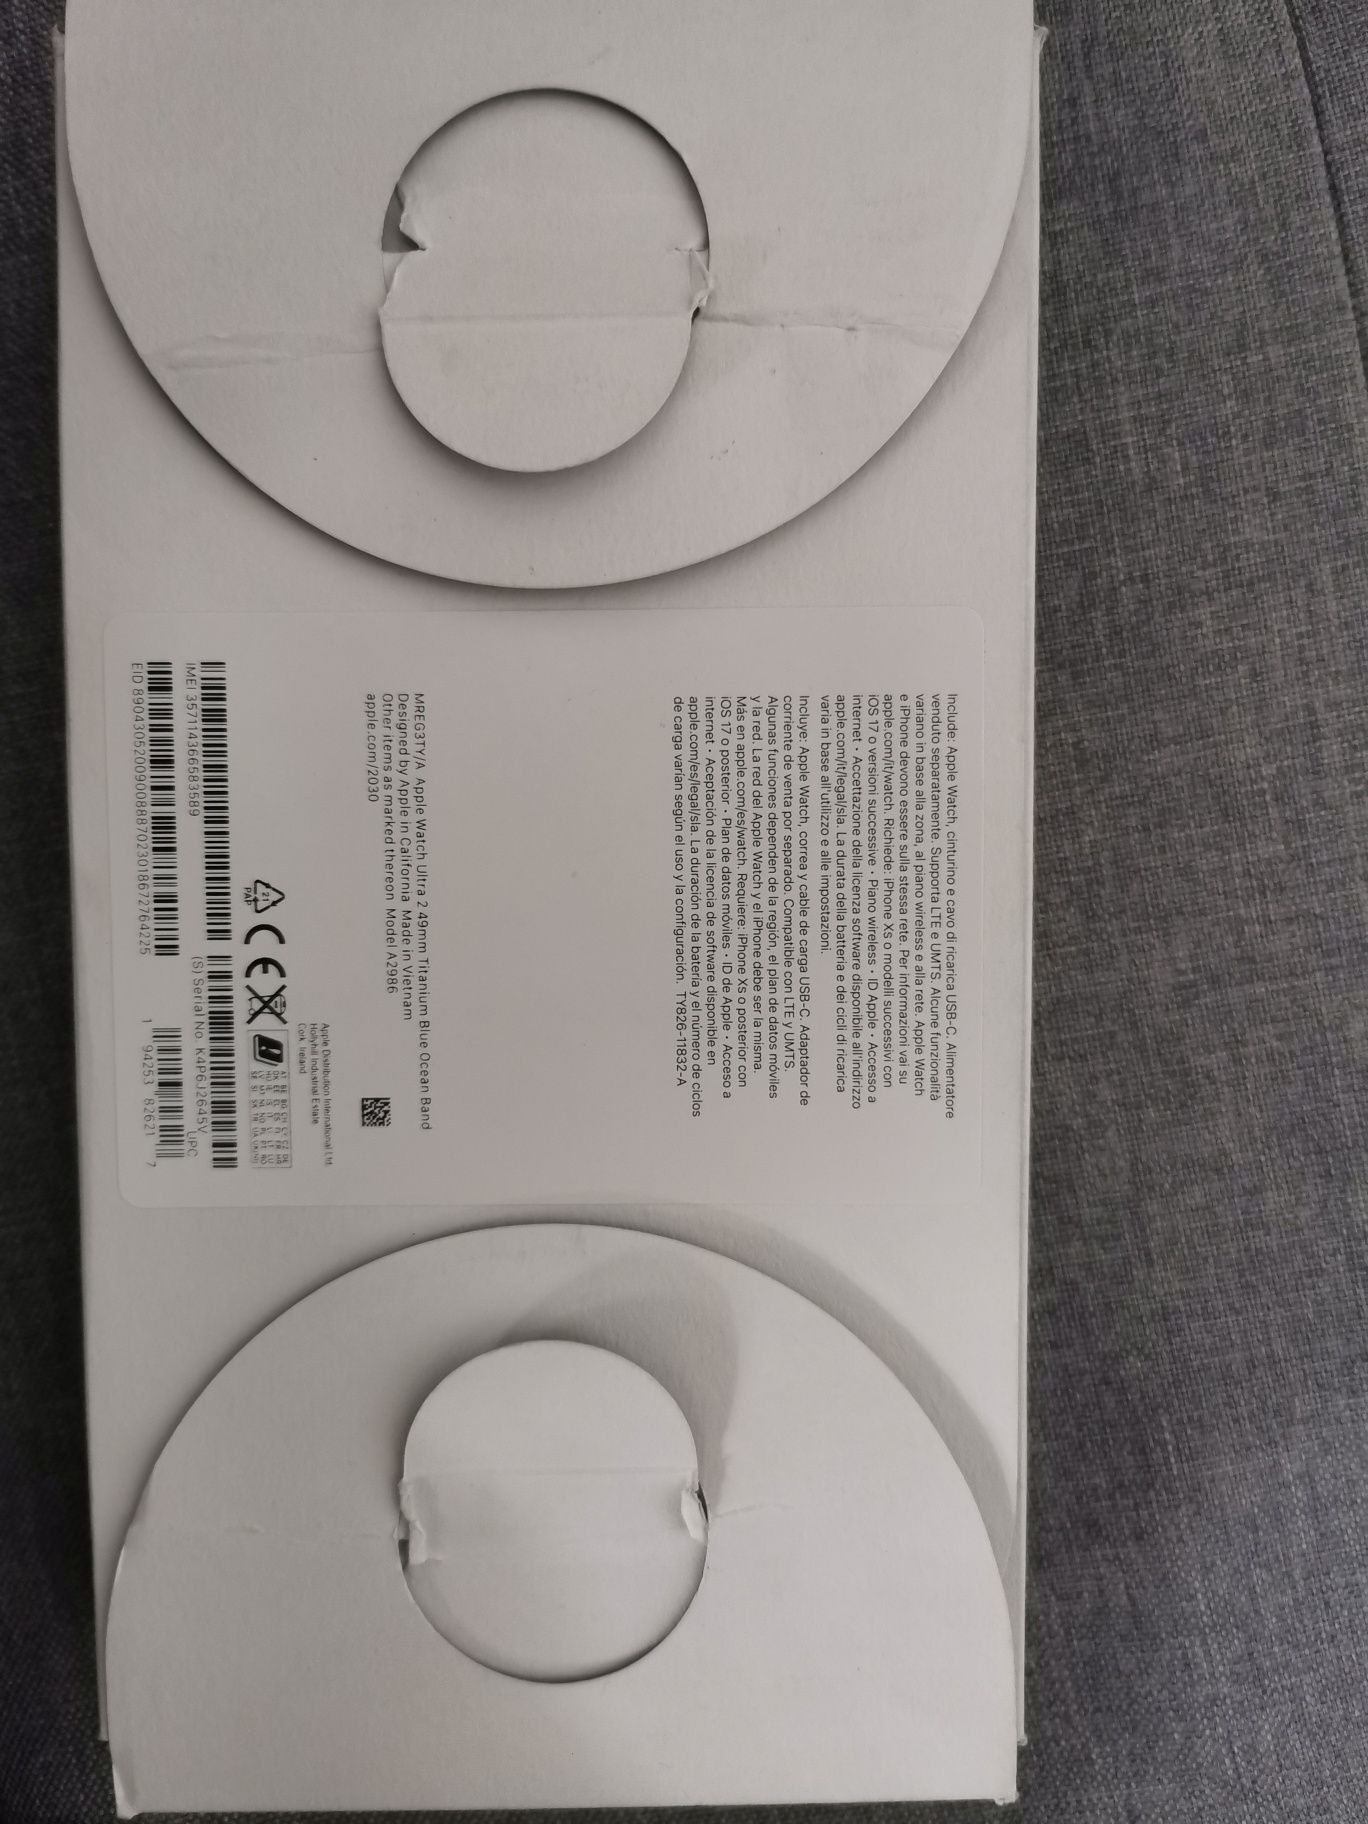 Apple watch ultra 2, 49 mm